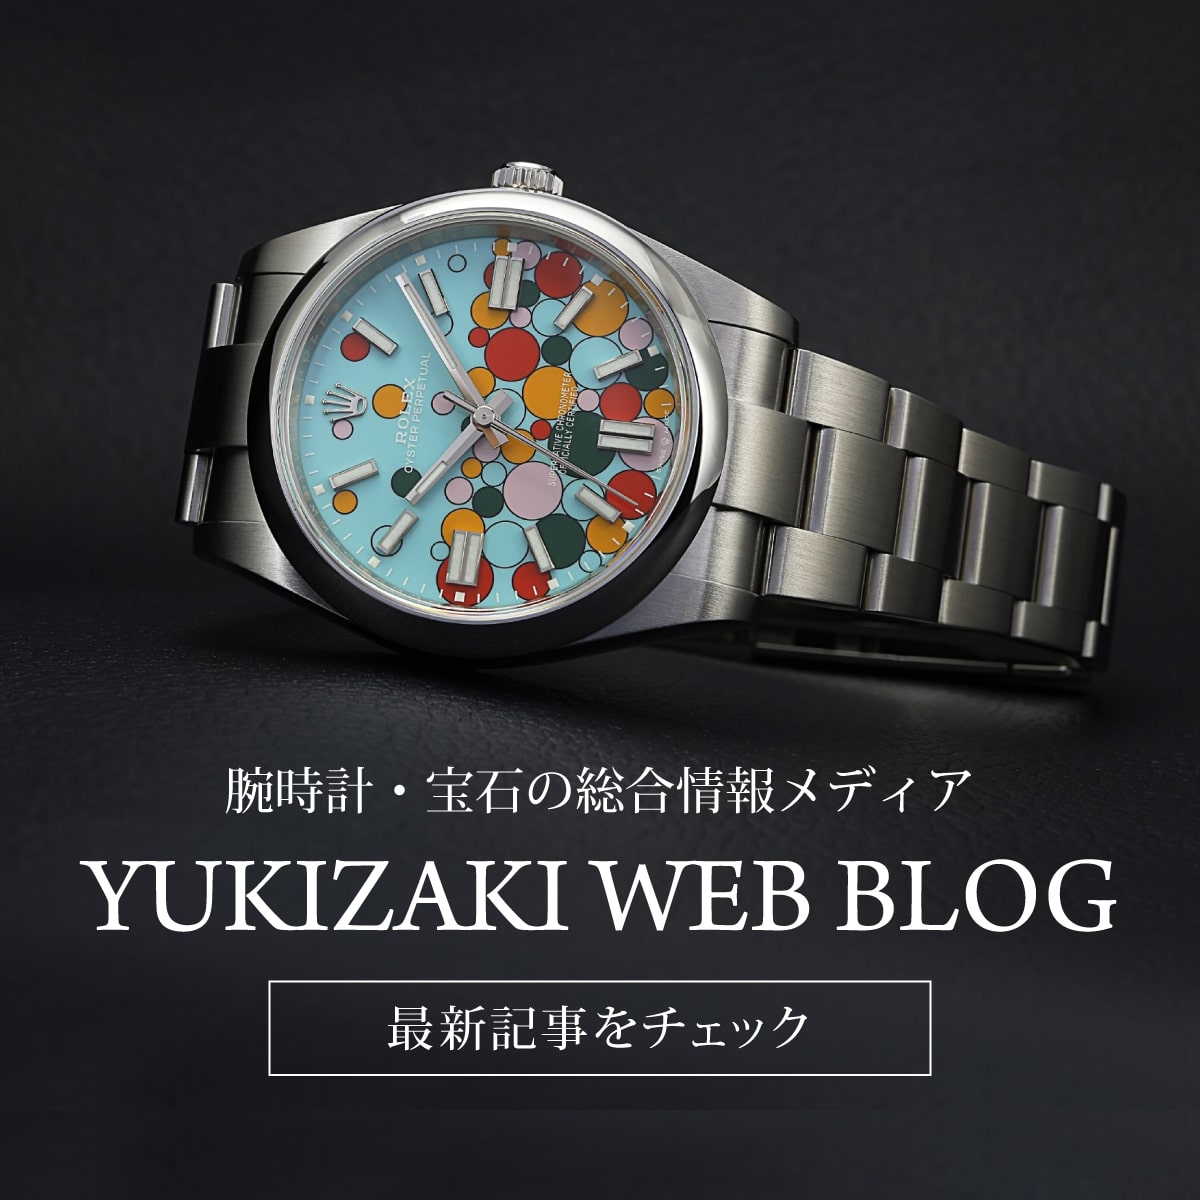 Yukizaki blog